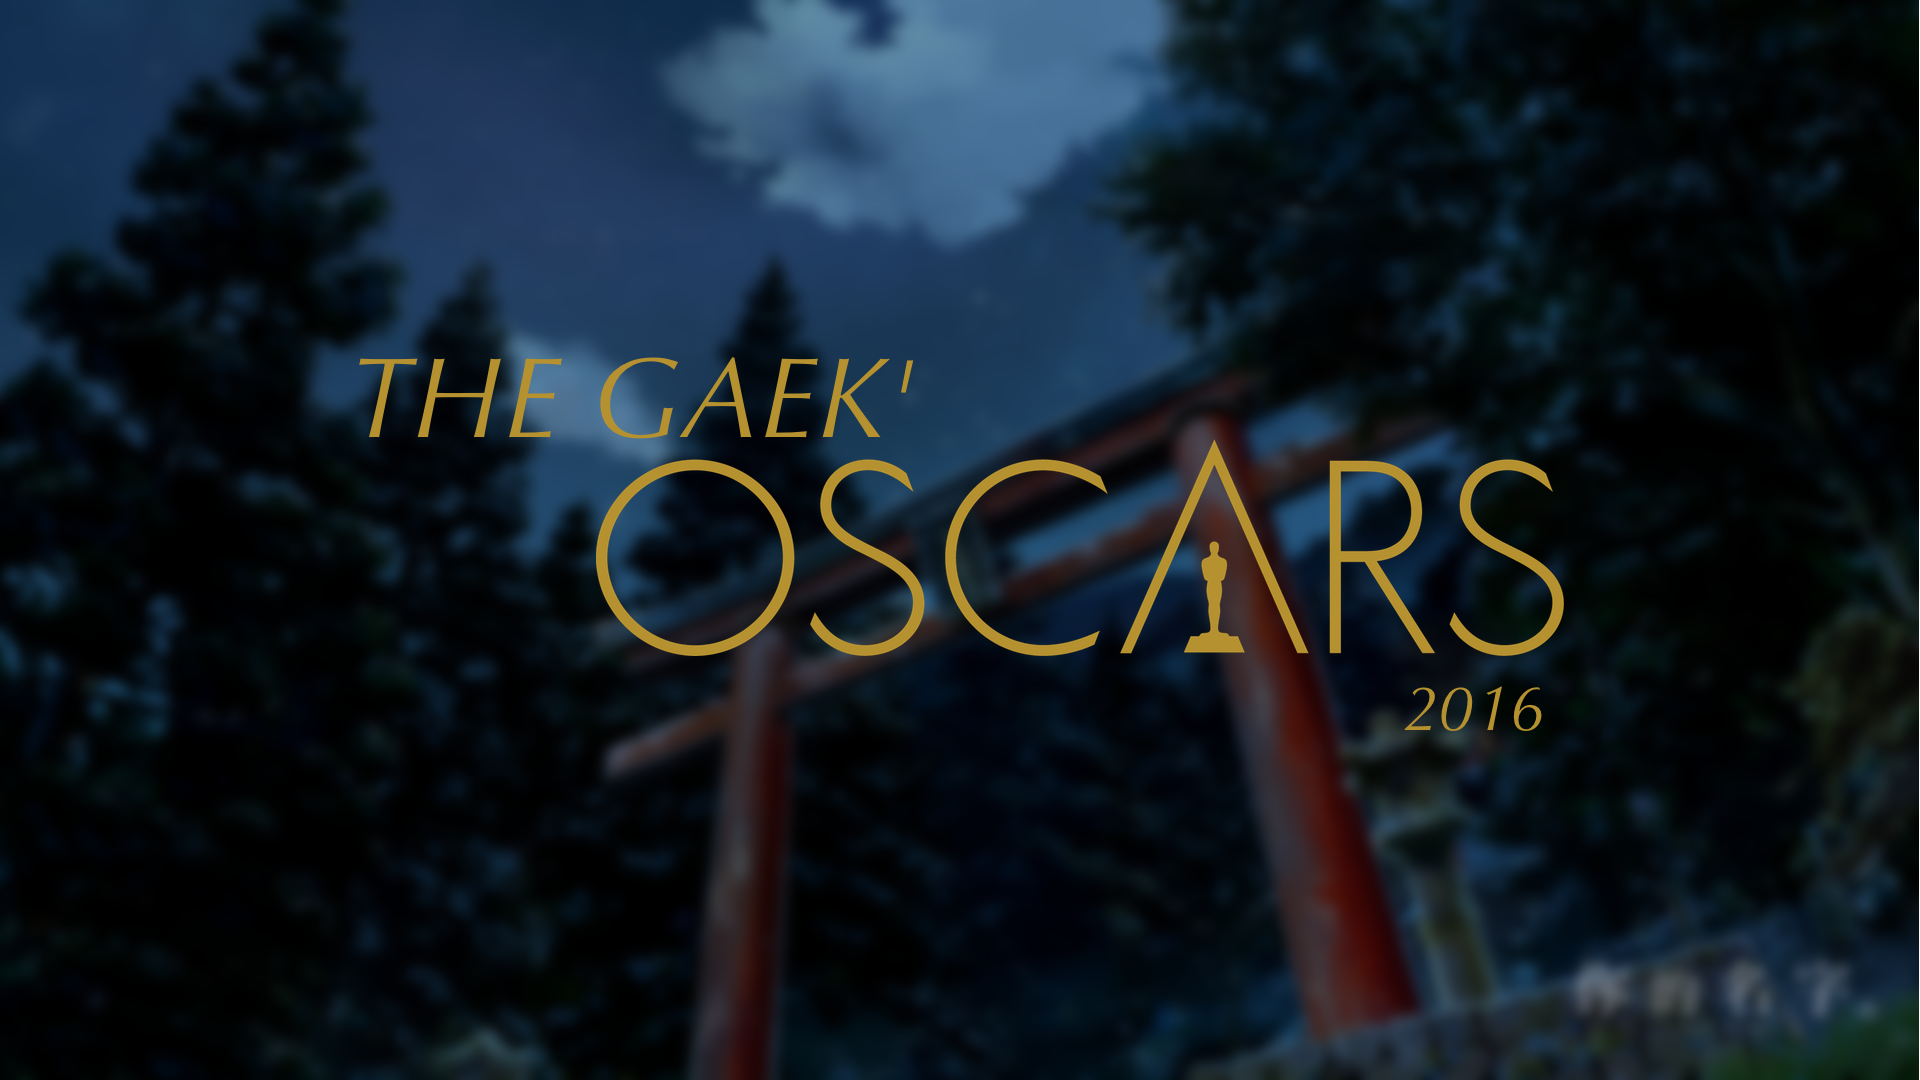 Gaek’Oscars 2016